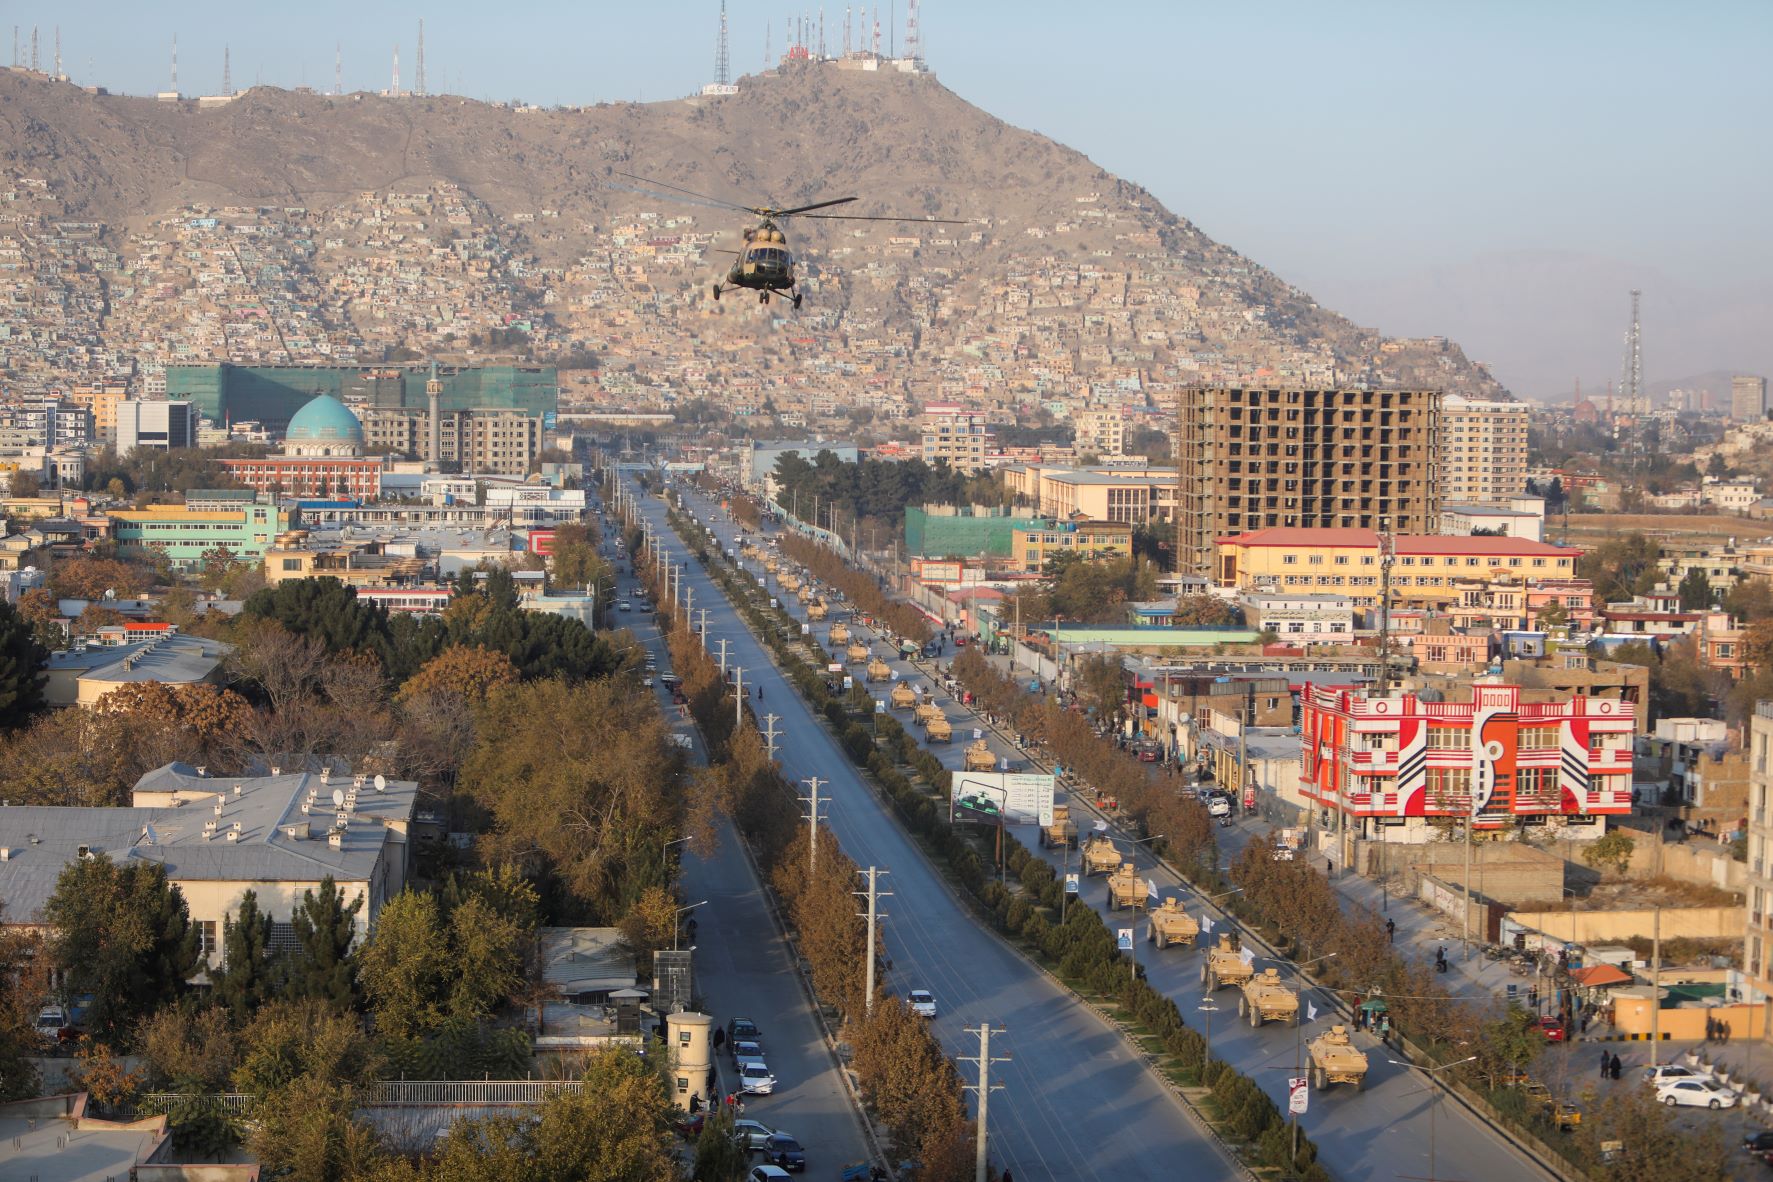 طائرة مروحية عسكرية شاركت في الاستعراض العسكري الذي أجرته حركة "طالبان" في كابول أخيراً